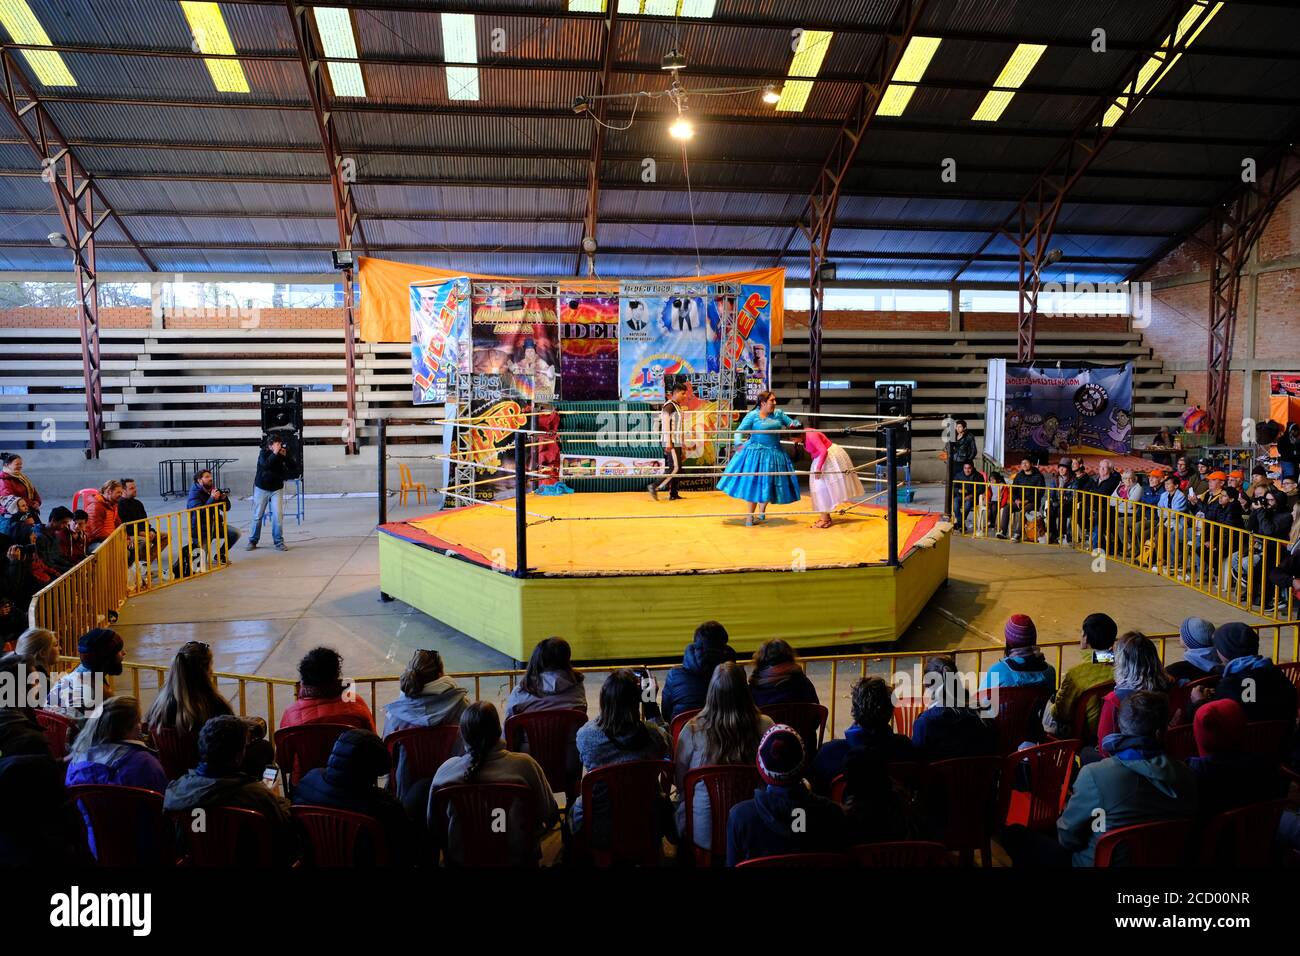 Bolivia La Paz - Bolivian Cholitas Wrestling show Stock Photo